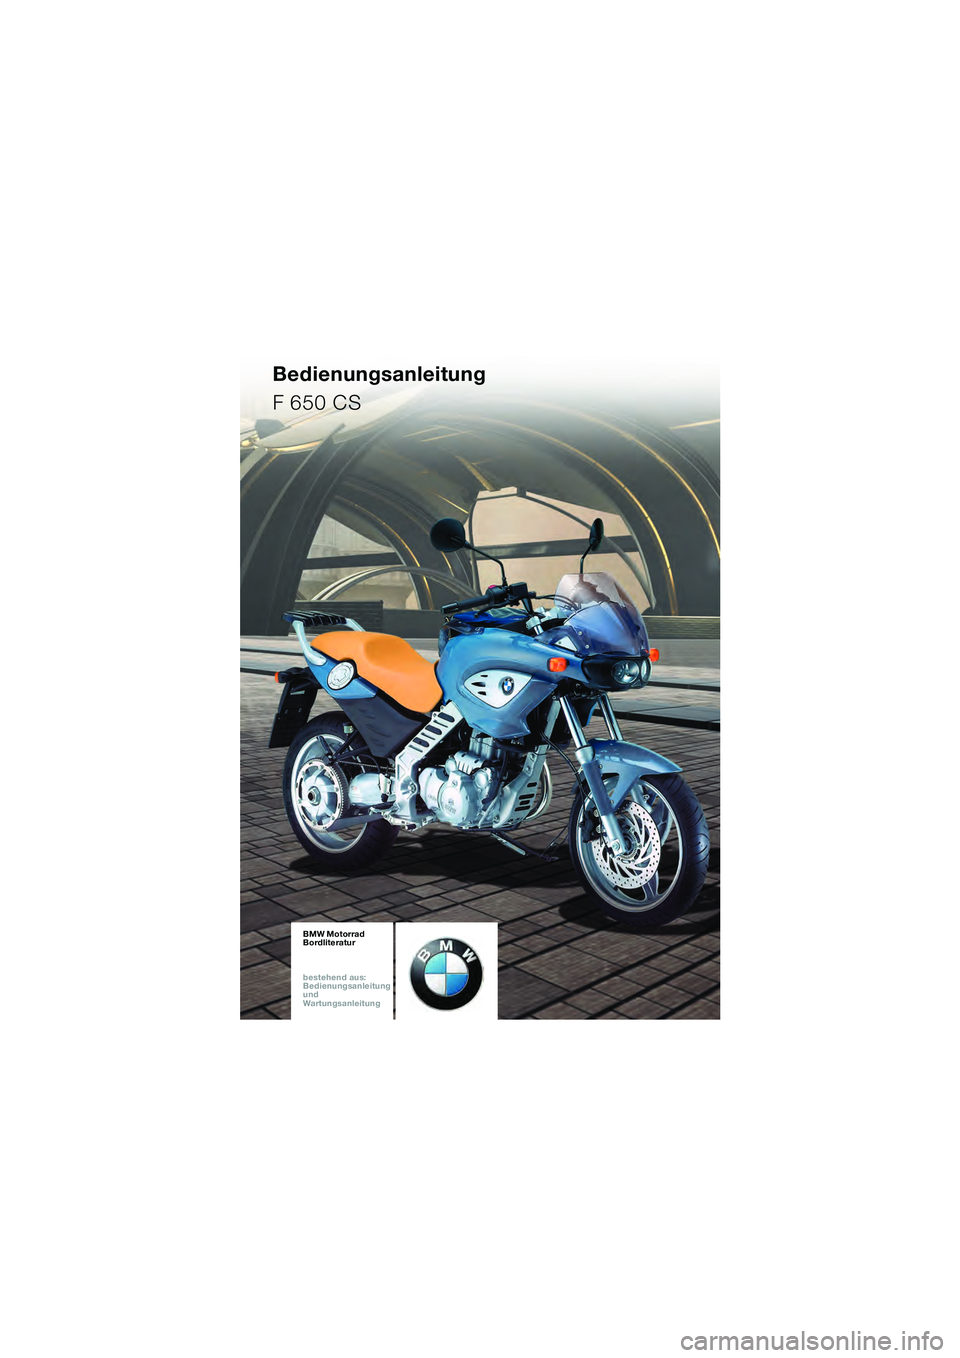 BMW MOTORRAD F 650 CS 2003  Betriebsanleitung (in German) Bedienungsanleitung
F 650 CS
10K14bkd2.book  Seite 1  Montag, 15. September 2003  12:25 12 